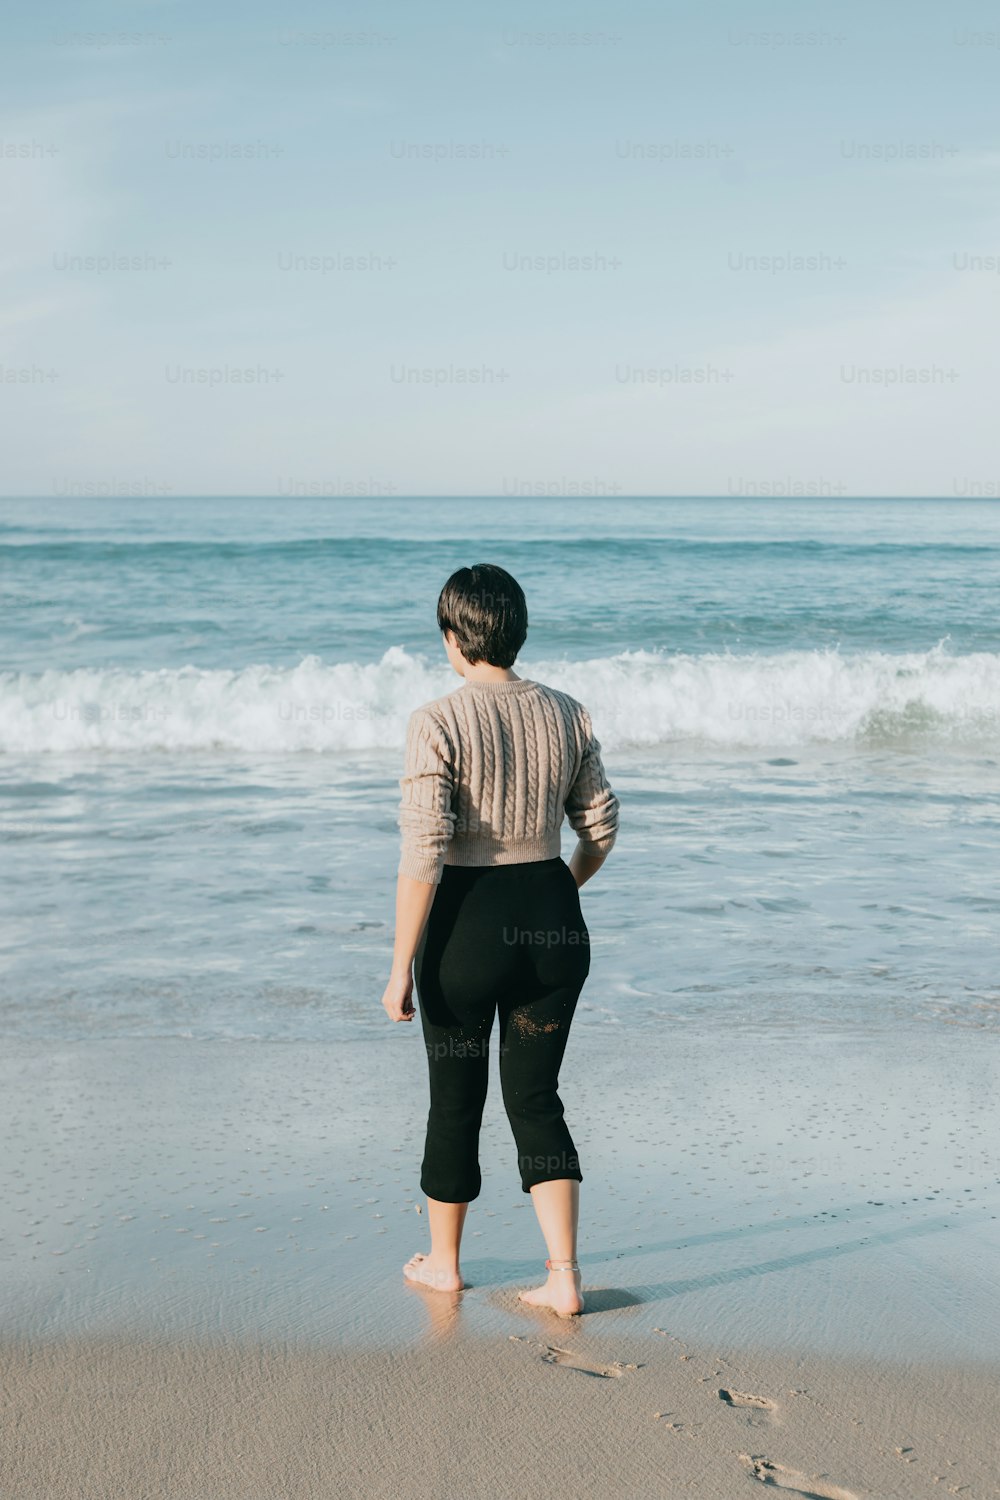 uma mulher em cima de uma praia de areia ao lado do oceano